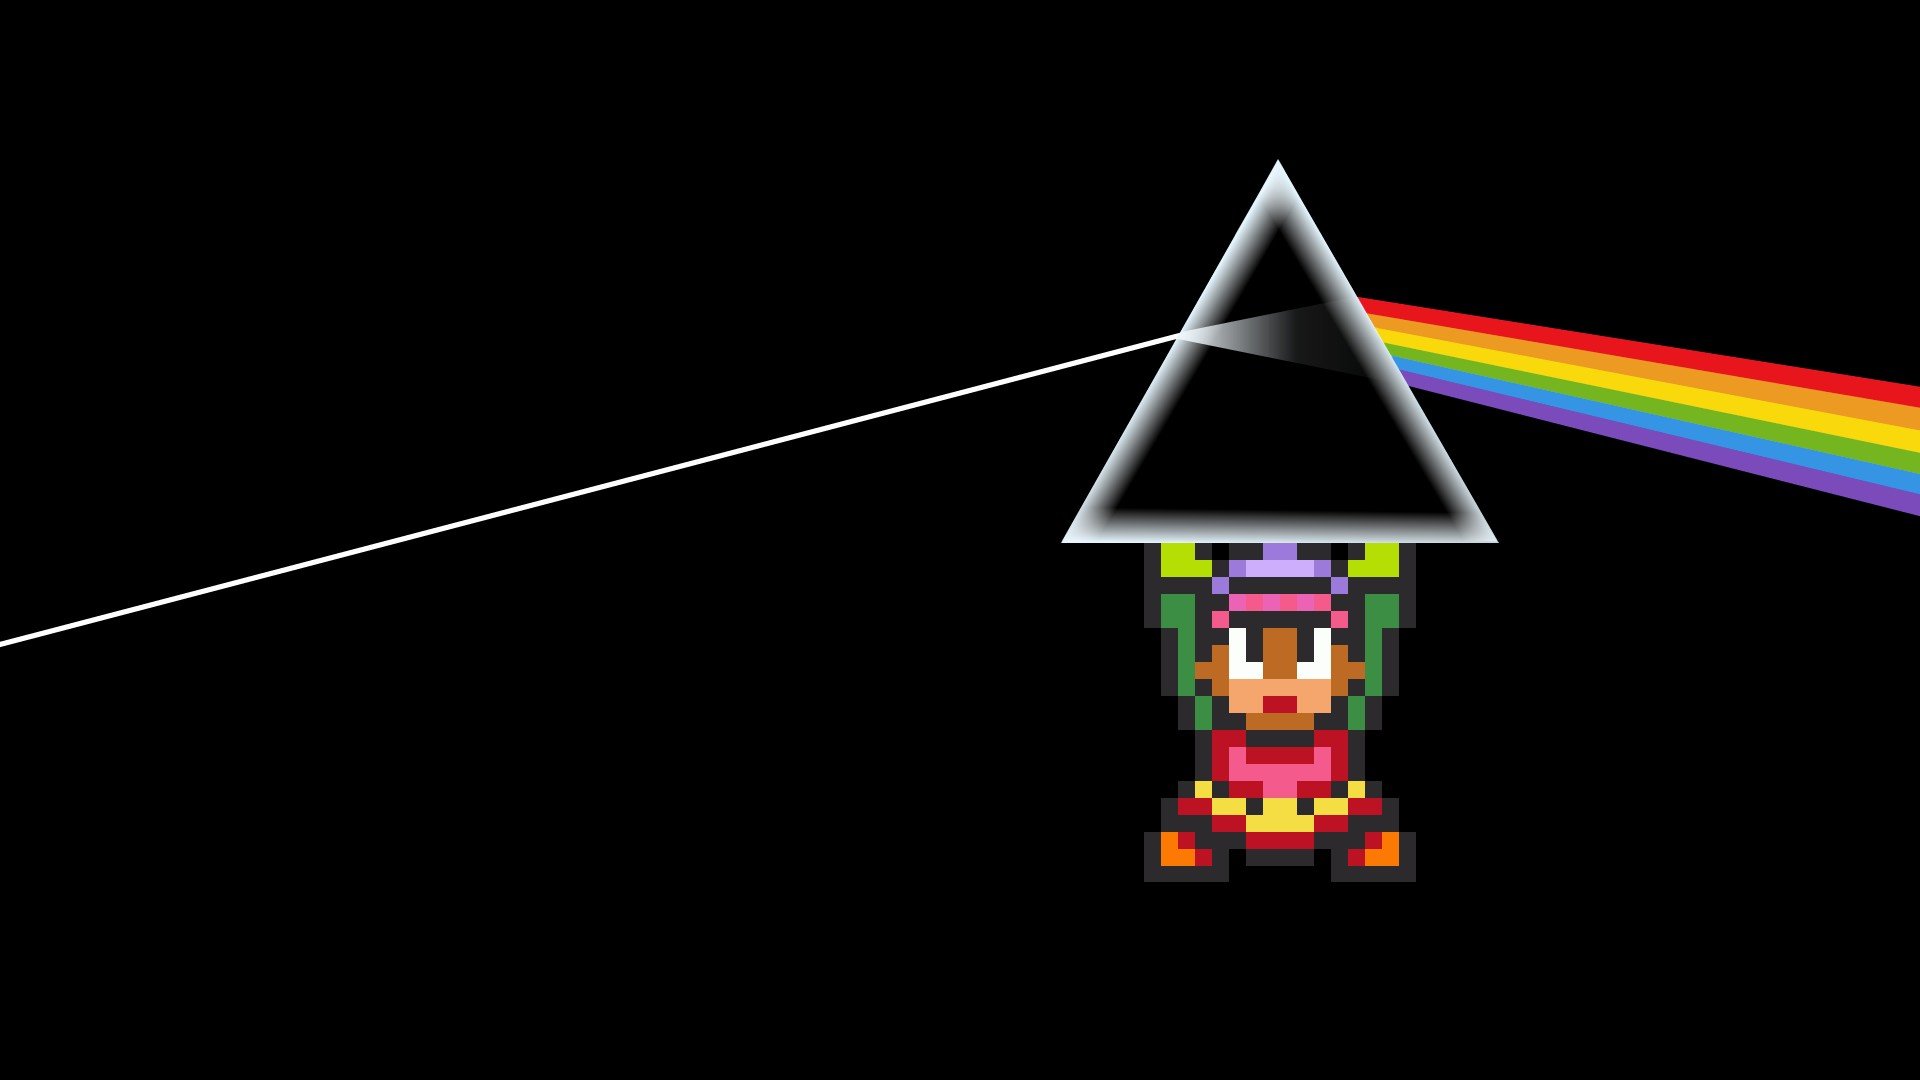 The Legend of Zelda, Pink Floyd HD Wallpapers / Desktop ...